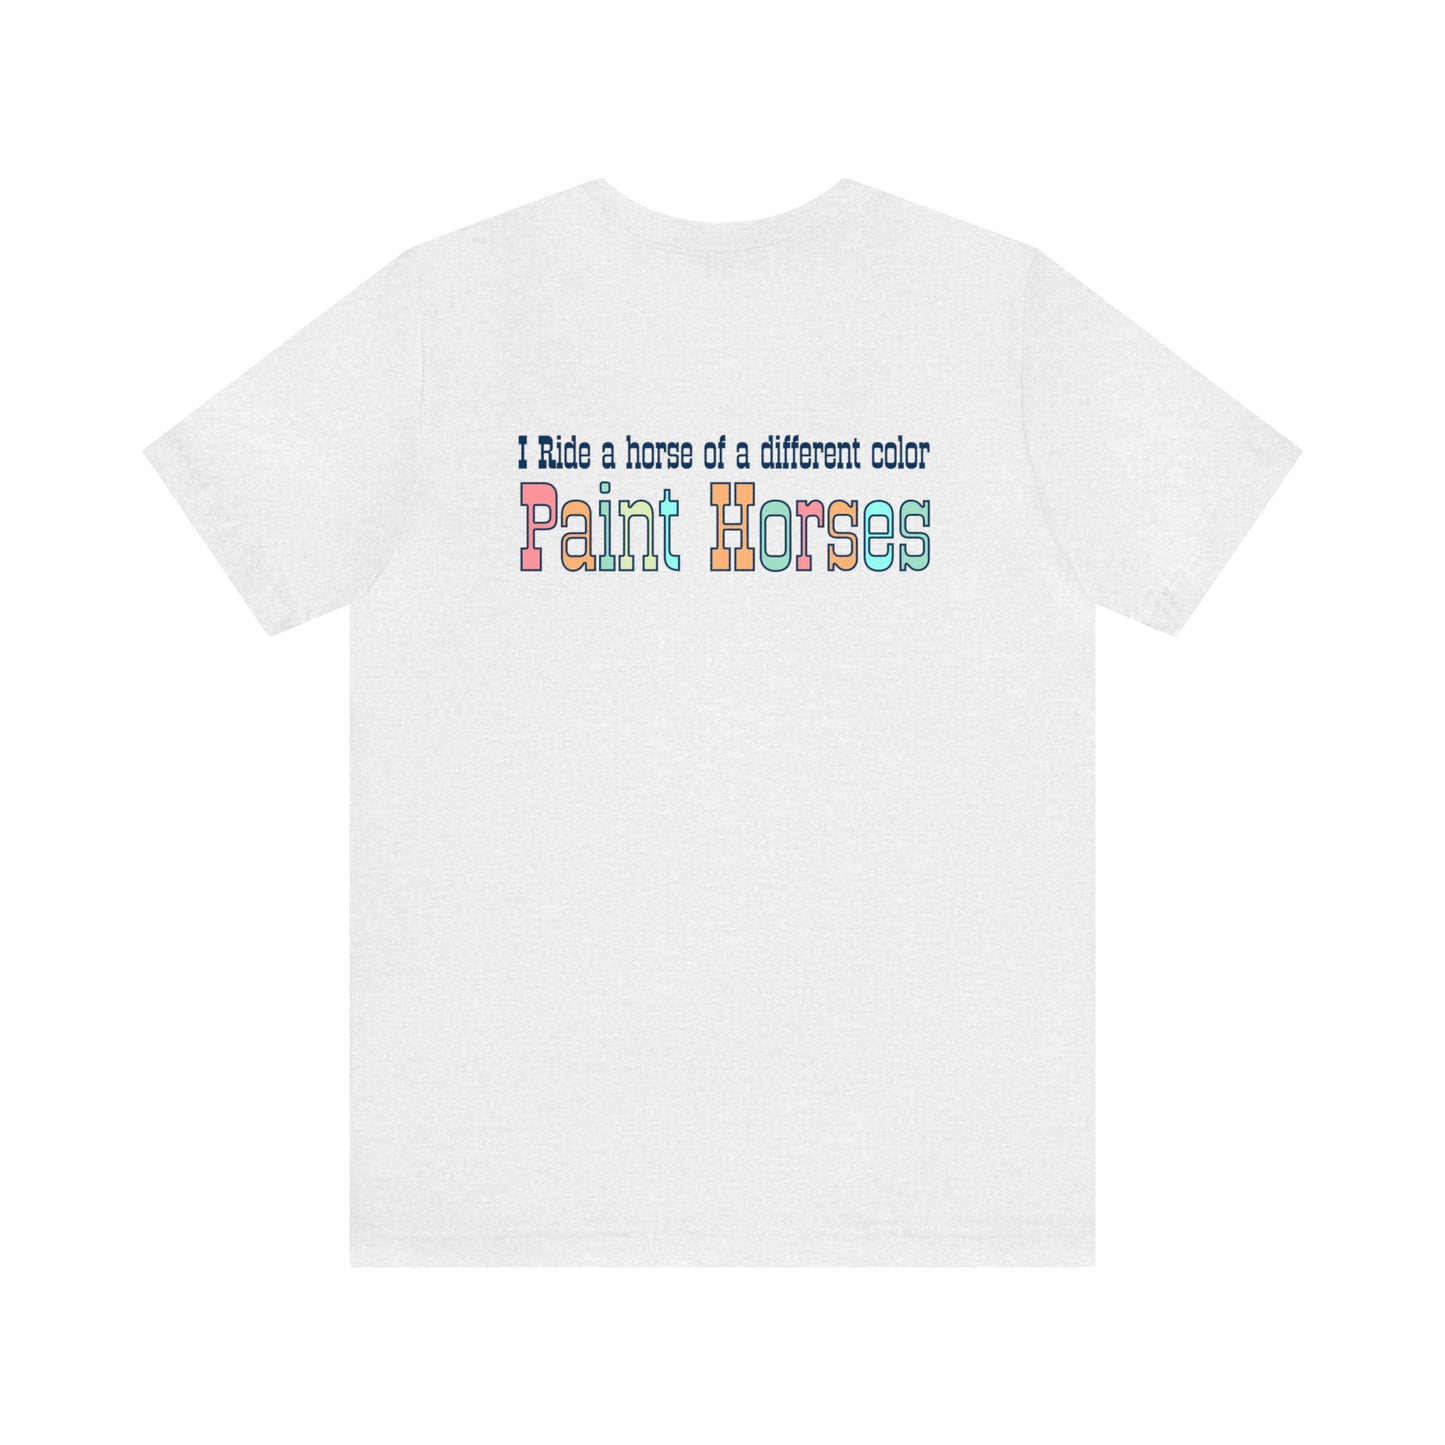 Horse T-shirt Paint Horse Shirt, Horse tee, Horse Shirt, County Western Shirt - FlooredByArt